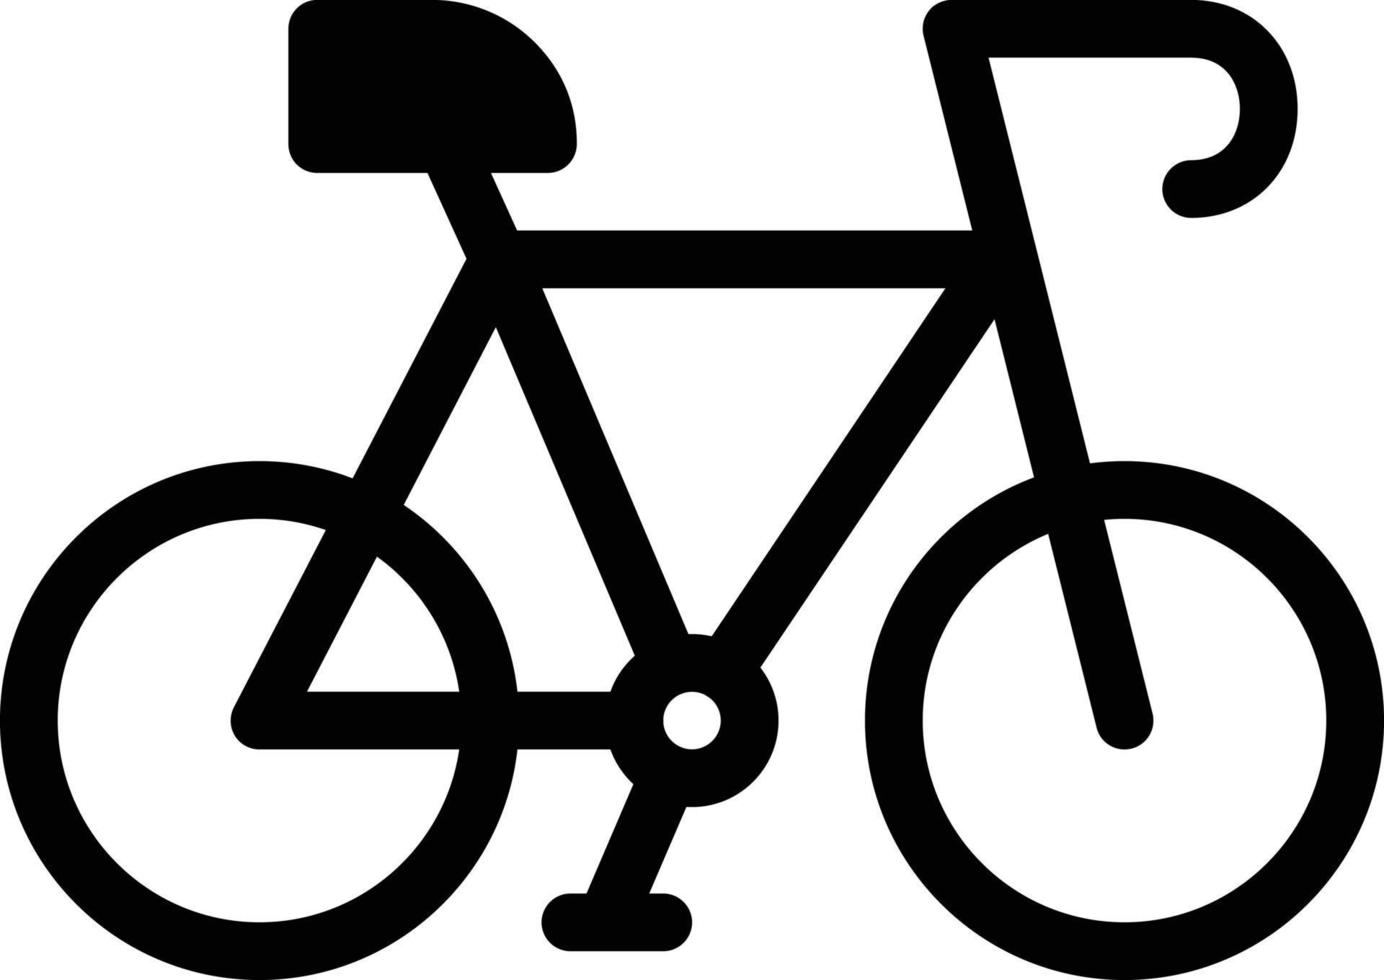 fahrradvektorillustration auf einem hintergrund. hochwertige symbole. vektorikonen für konzept und grafikdesign. vektor